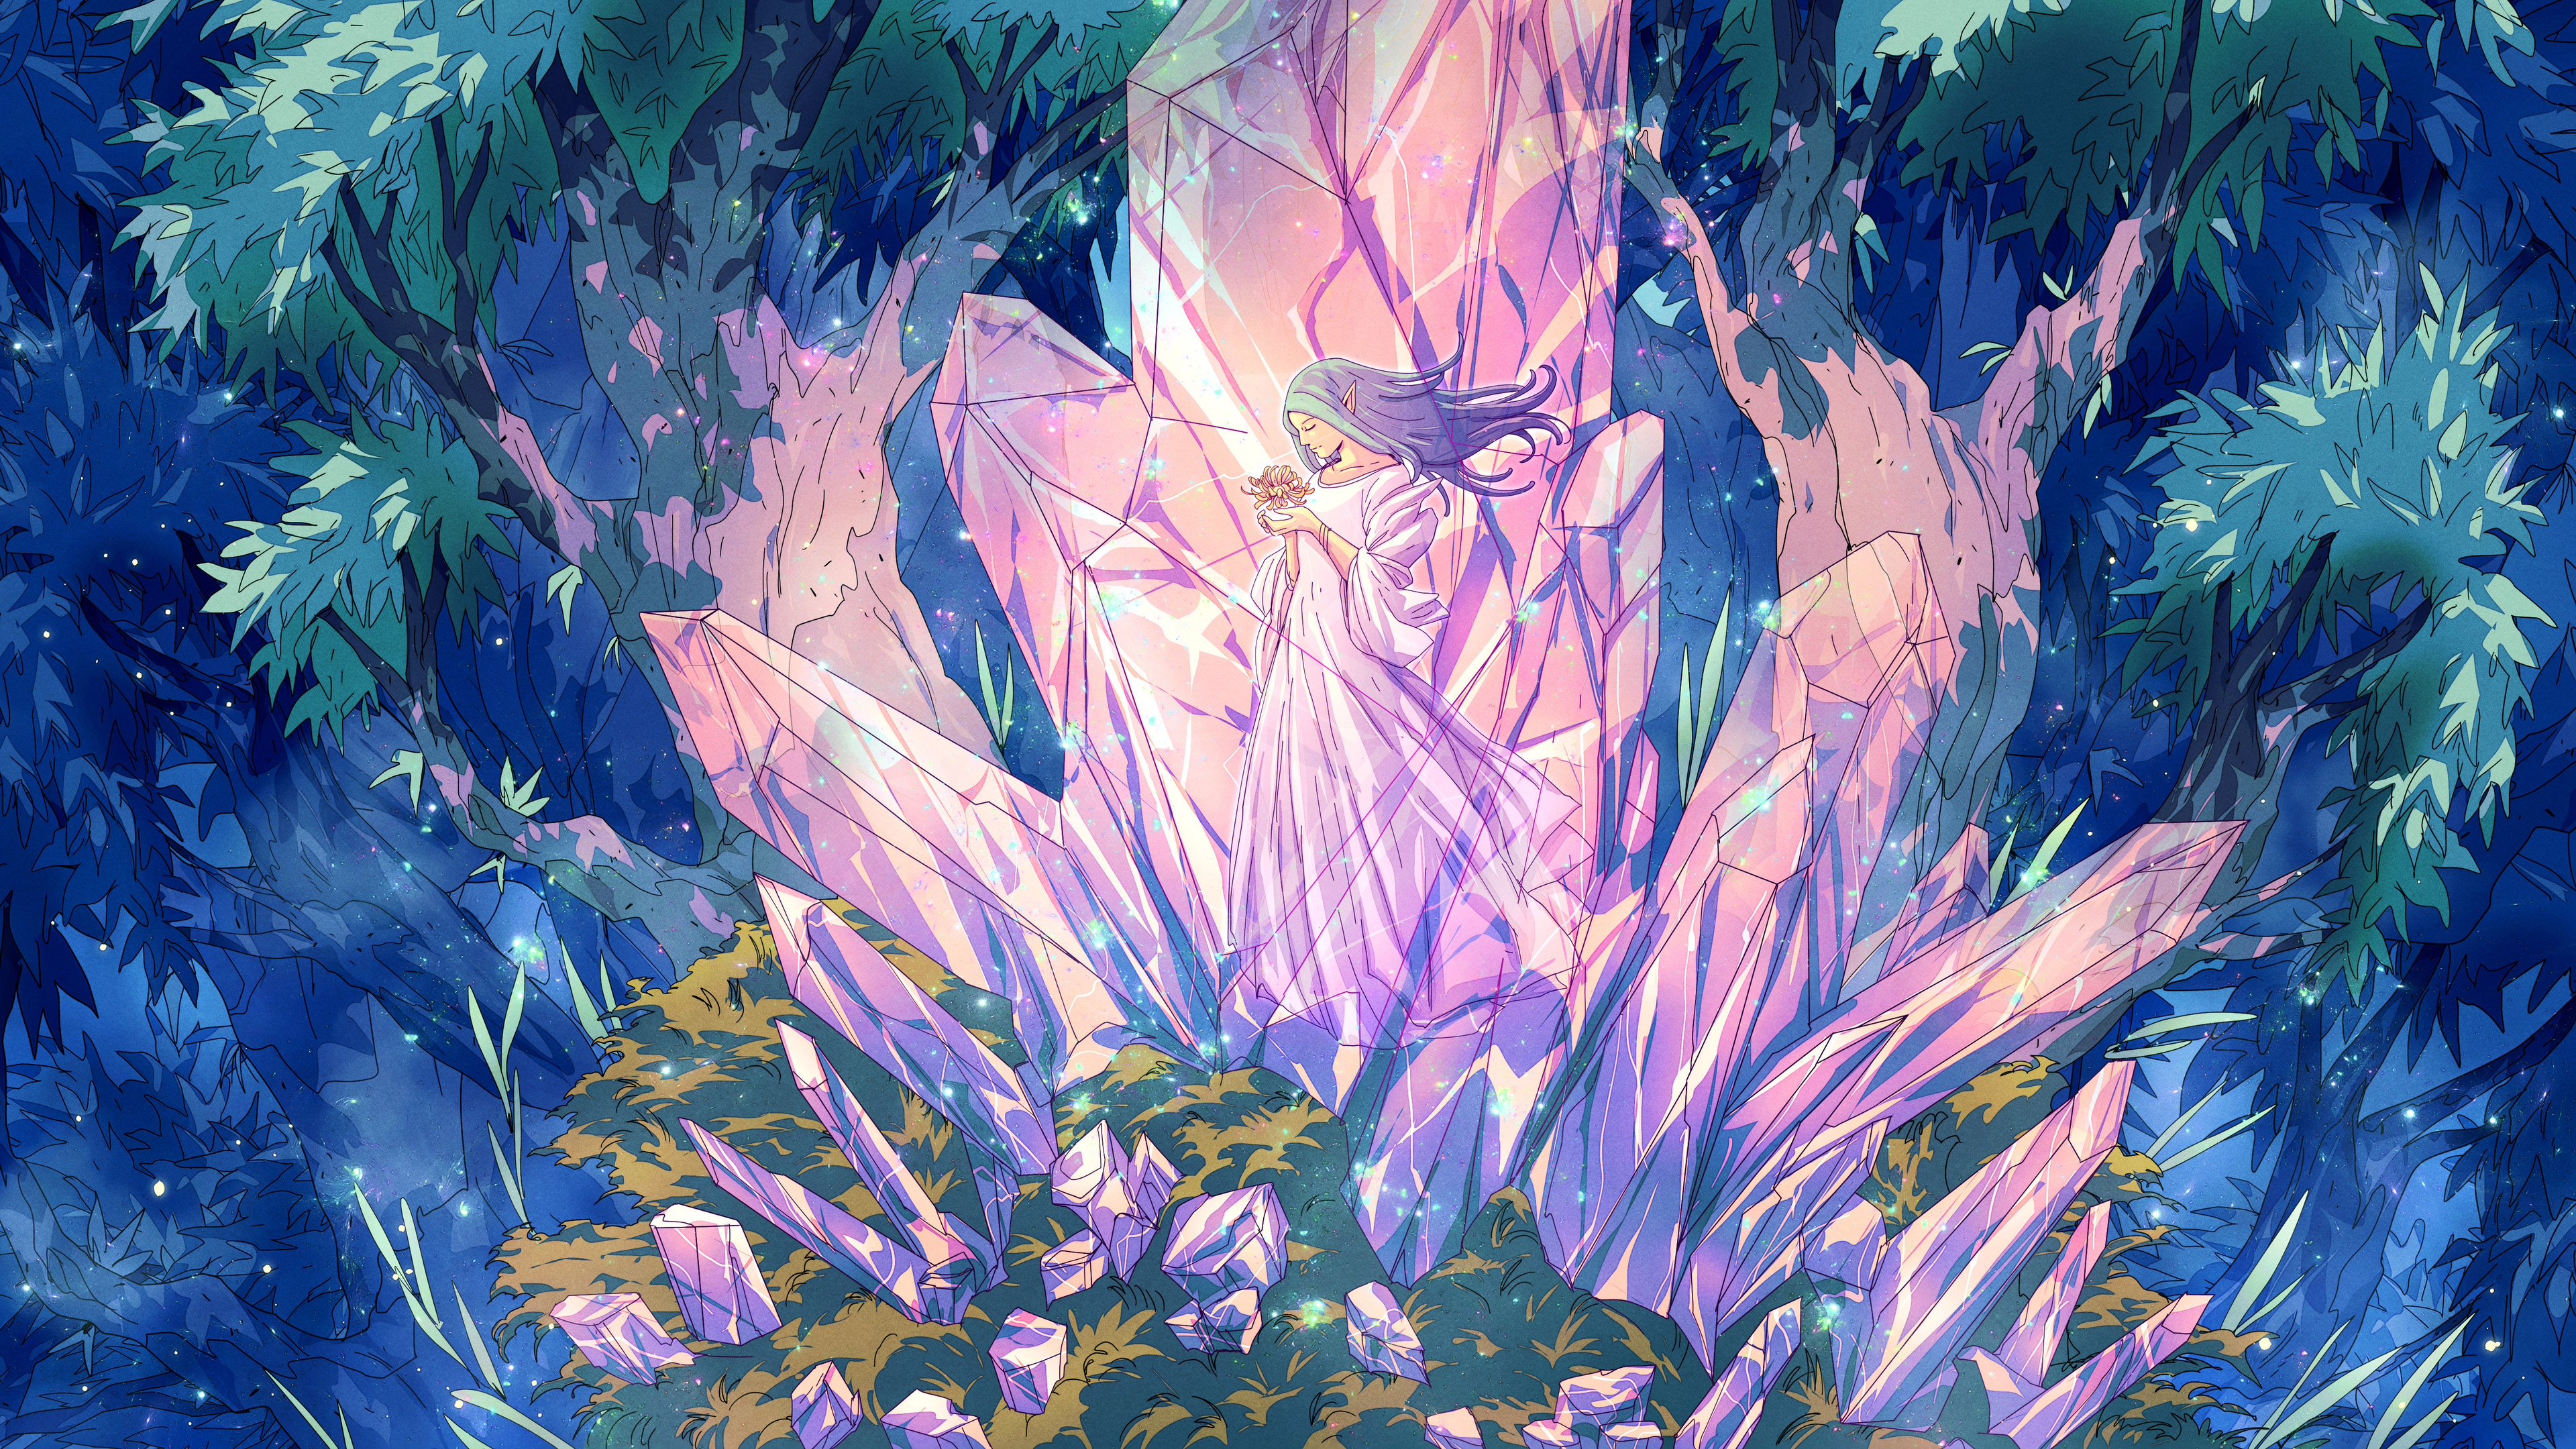 Christian Benavides Digital Art Fantasy Art Crystal Elf Girl Artwork Flowers 3840x2160